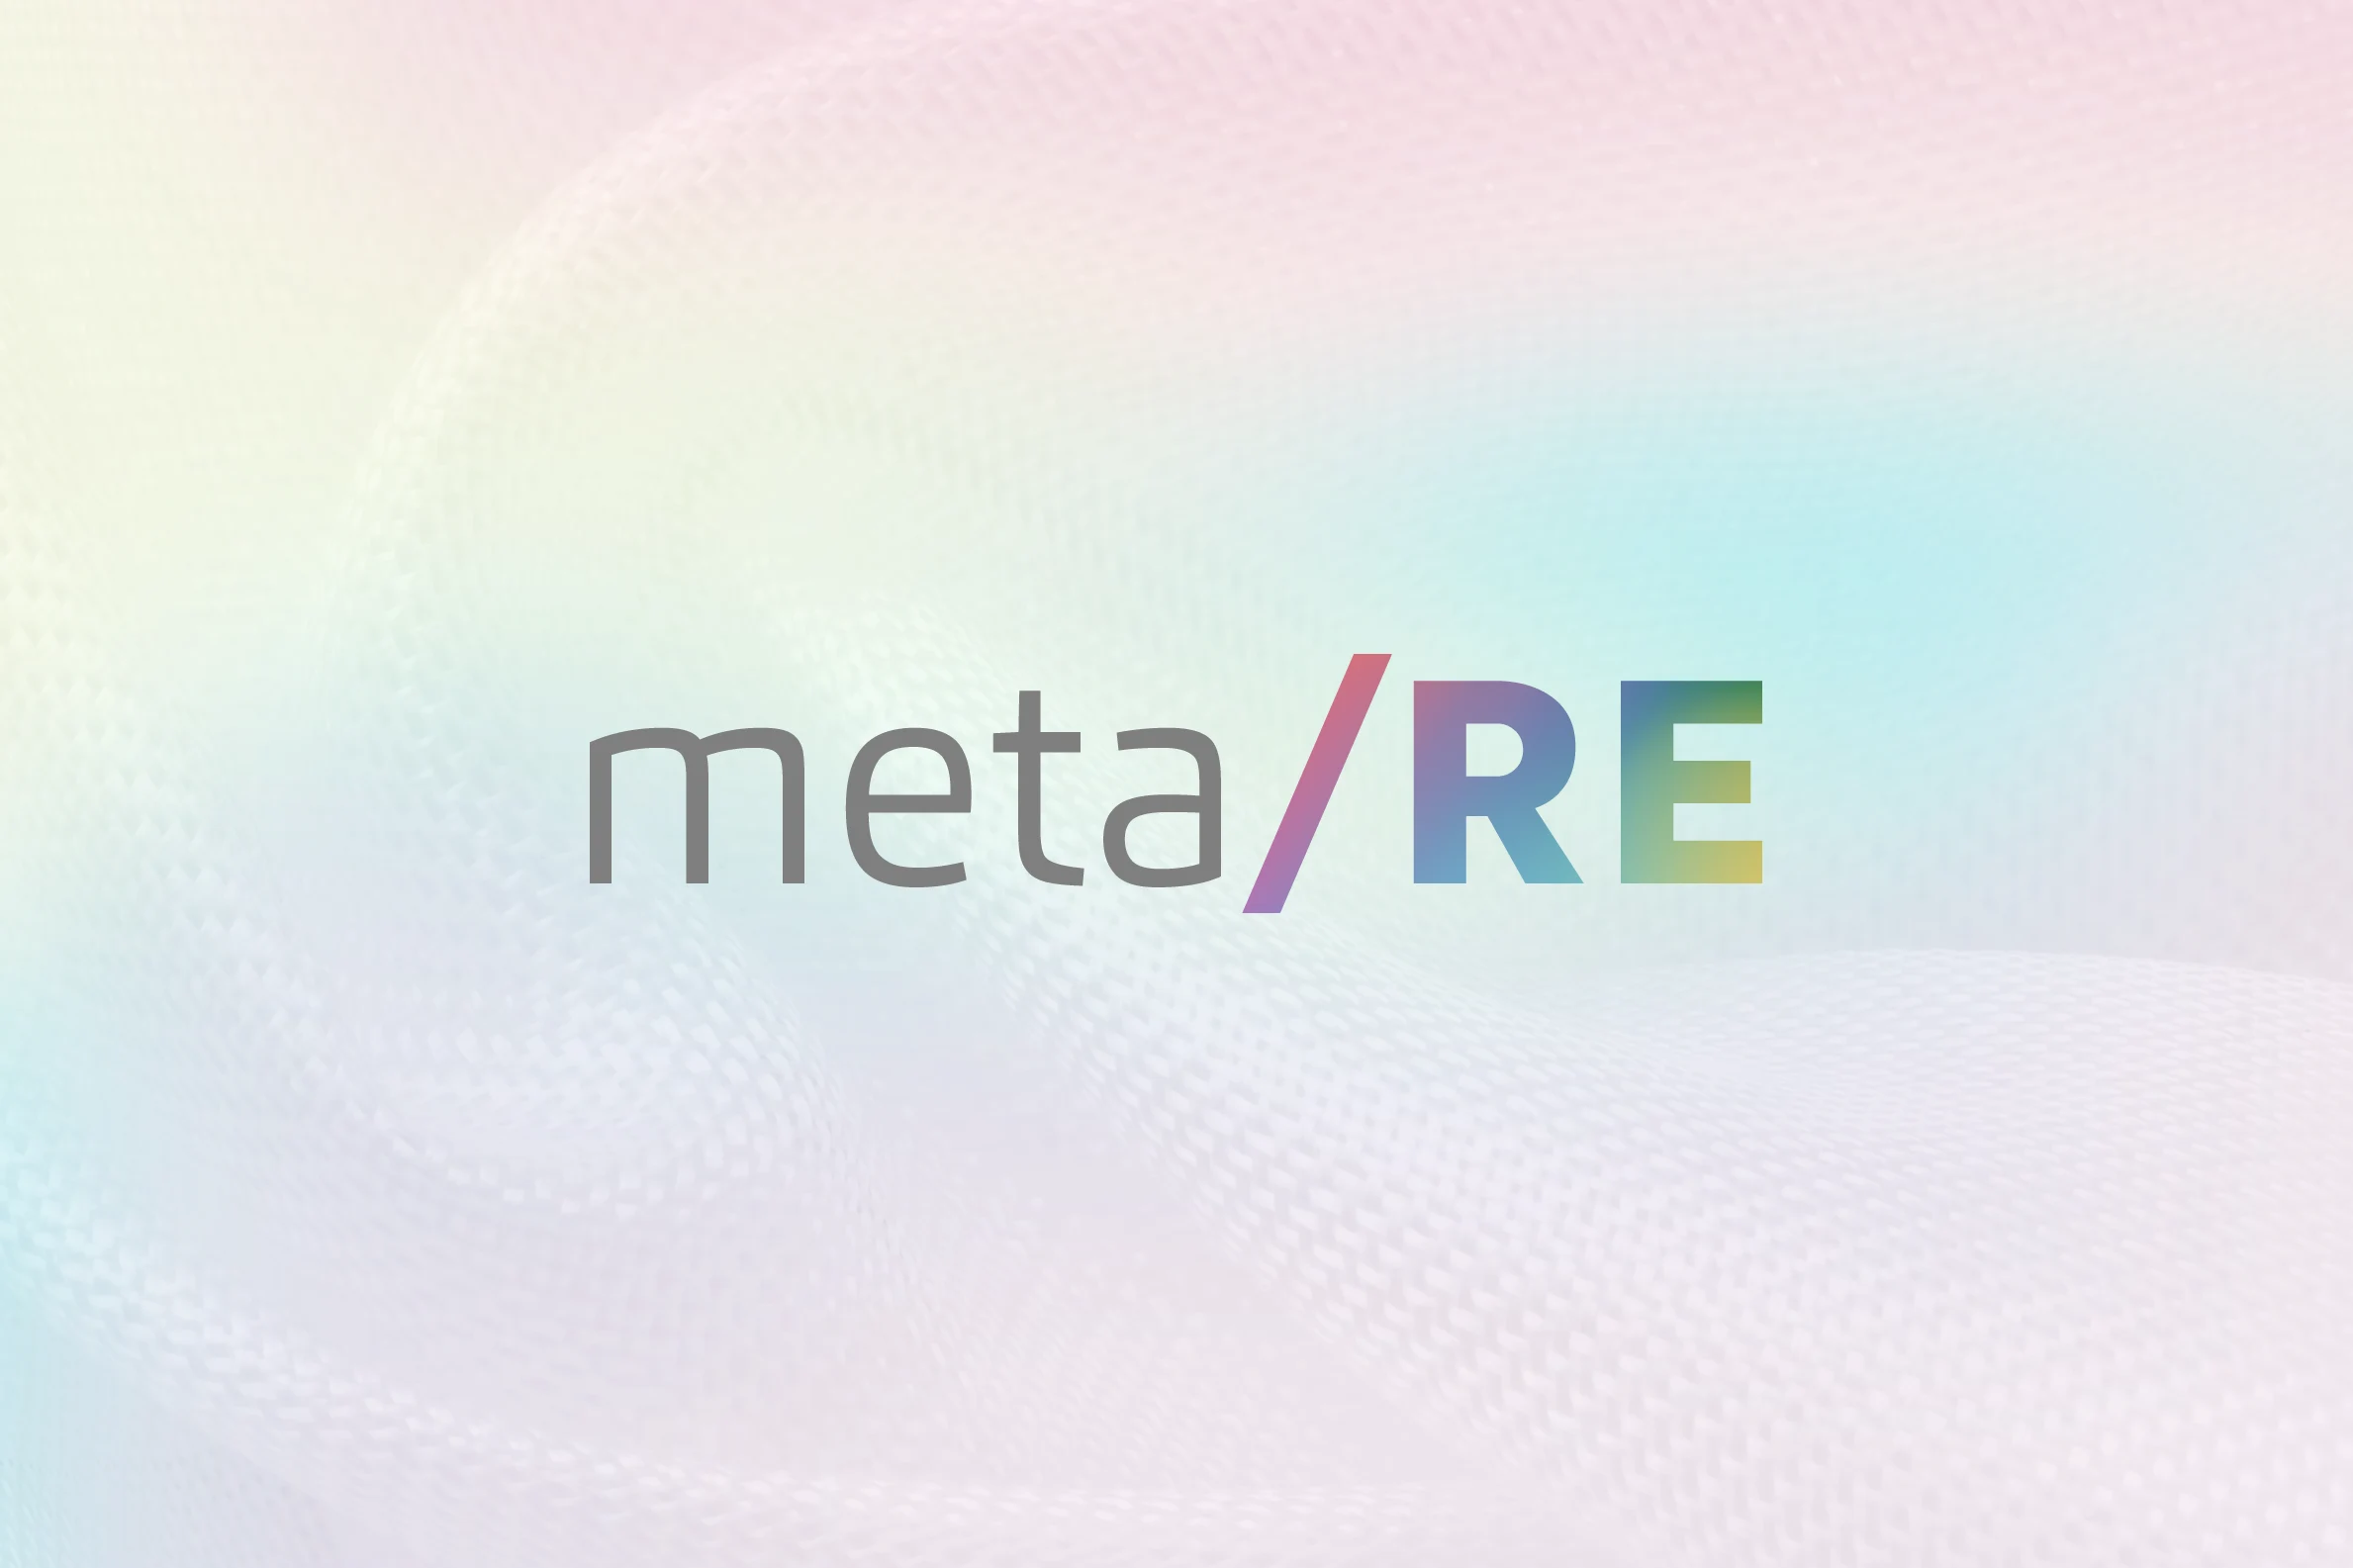 meta-re-logo